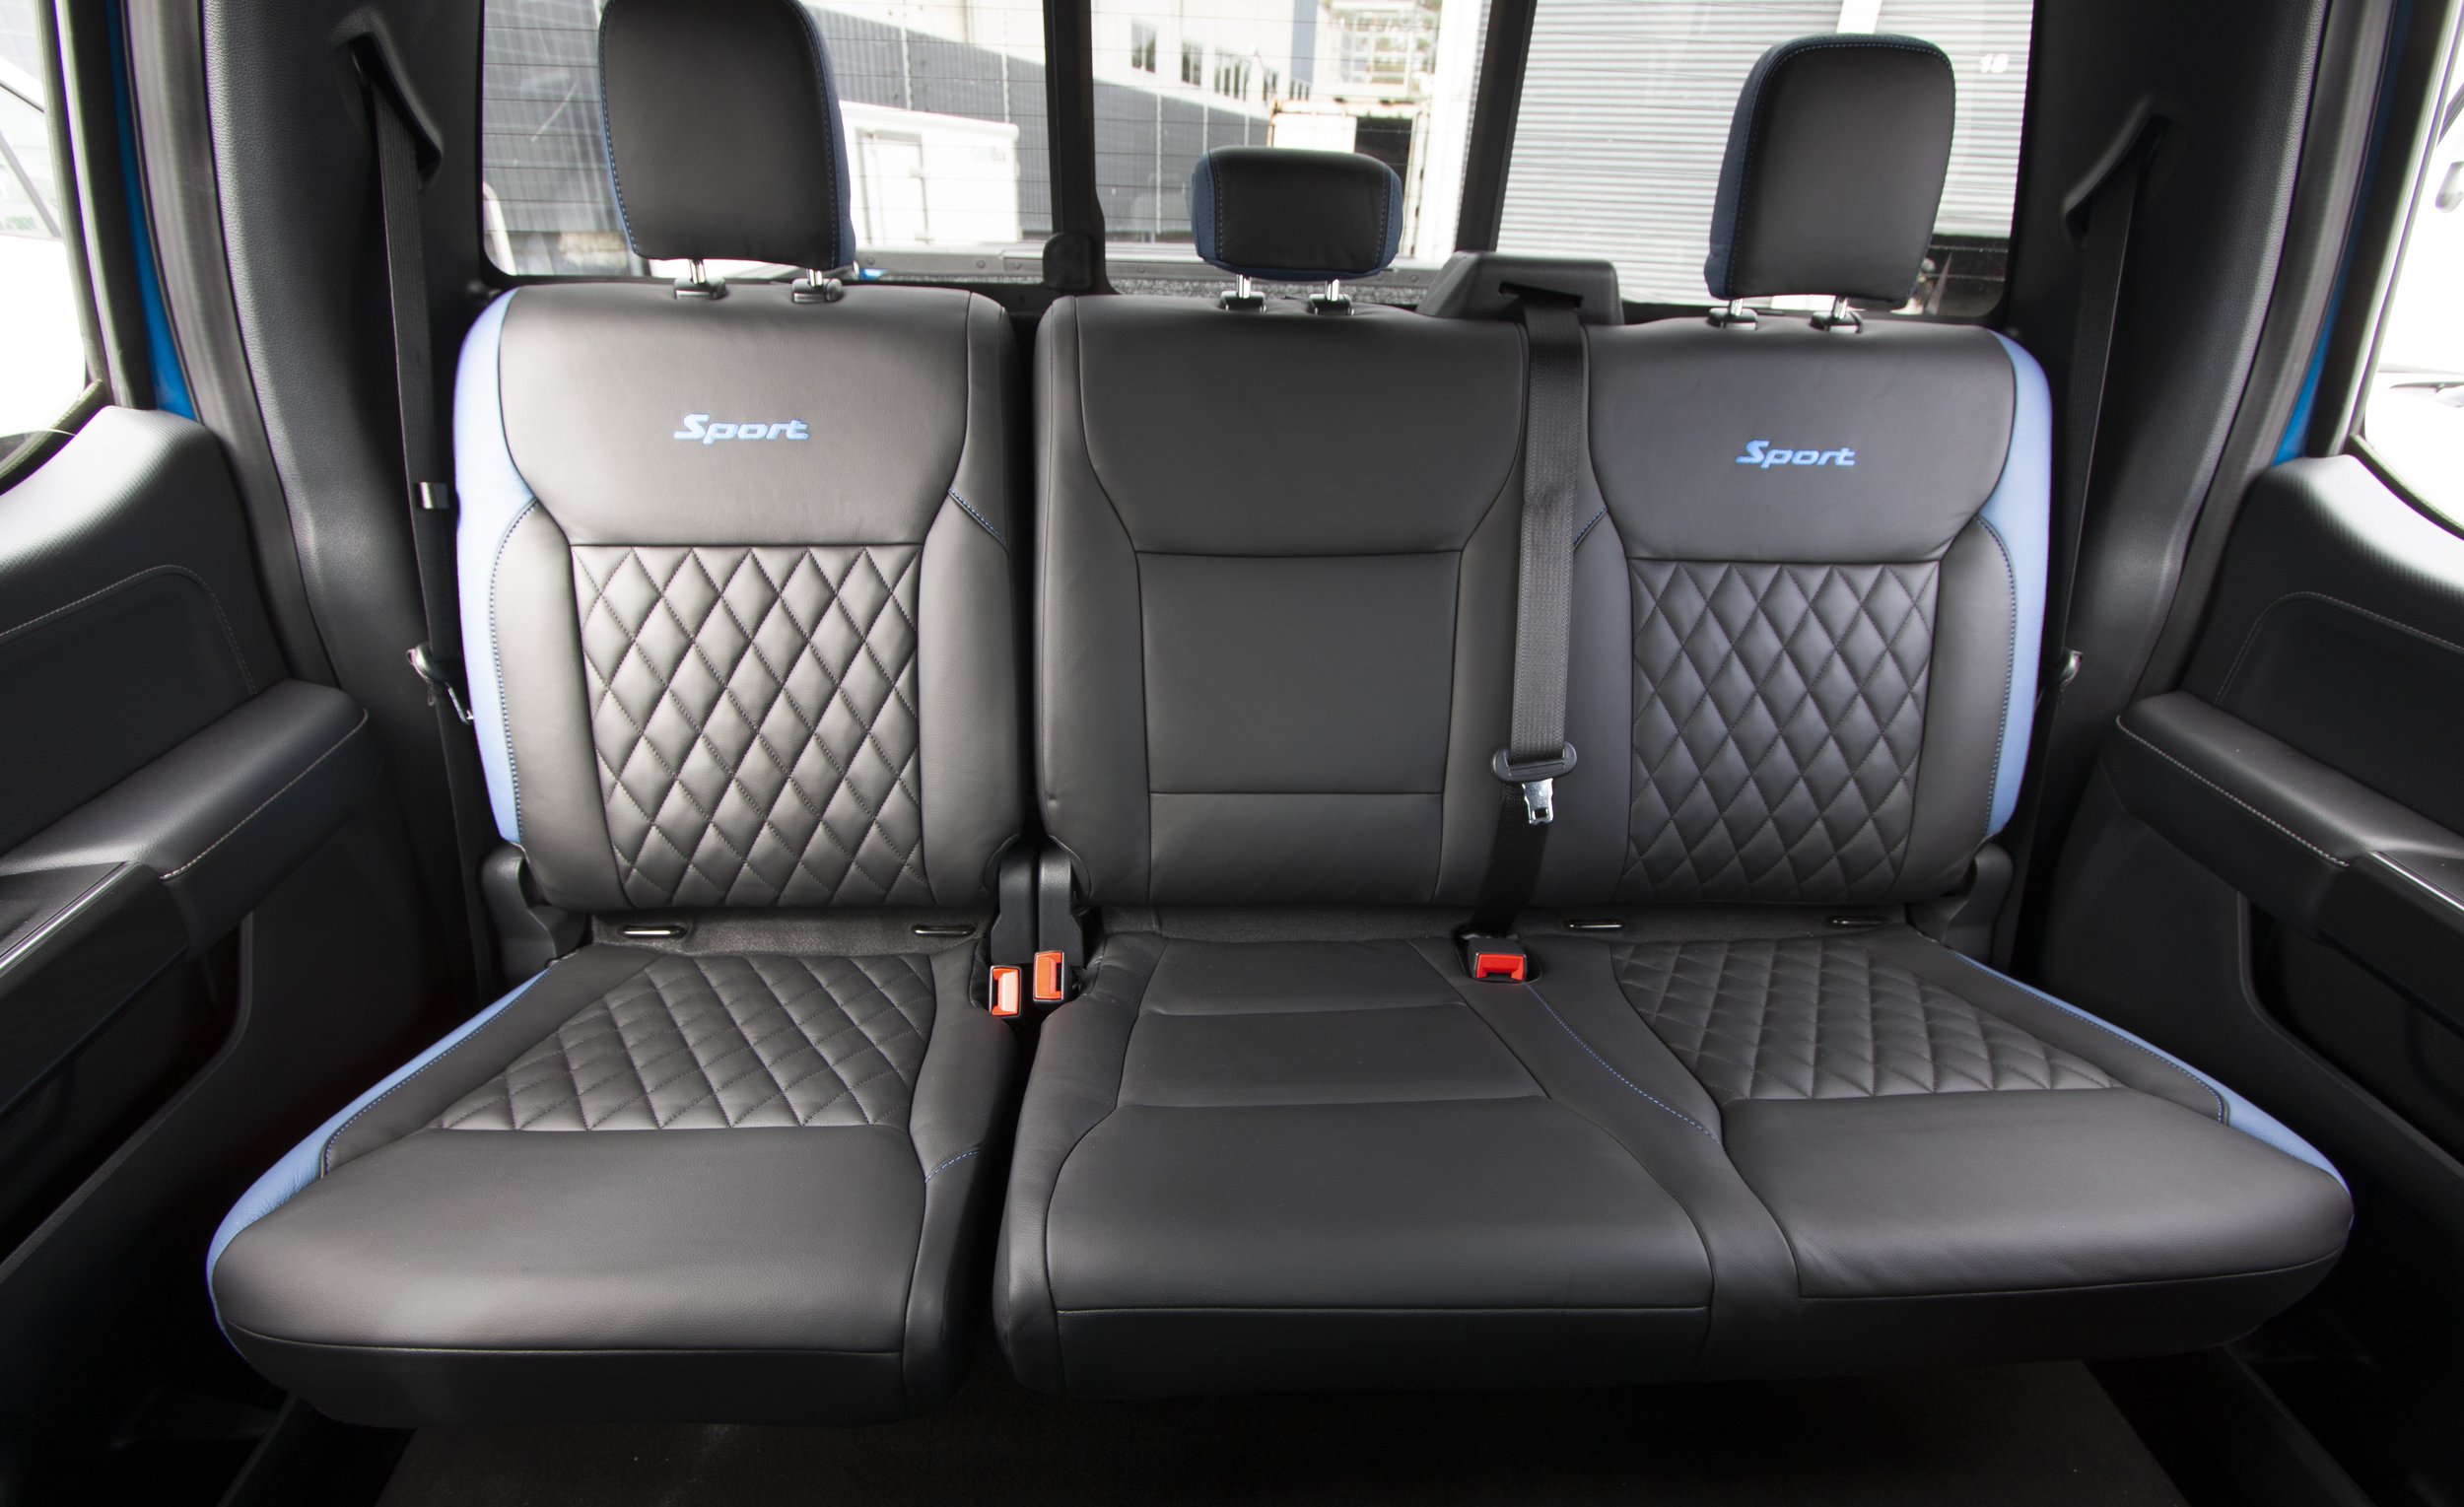 2022 Ford F-150 interior 20.jpg